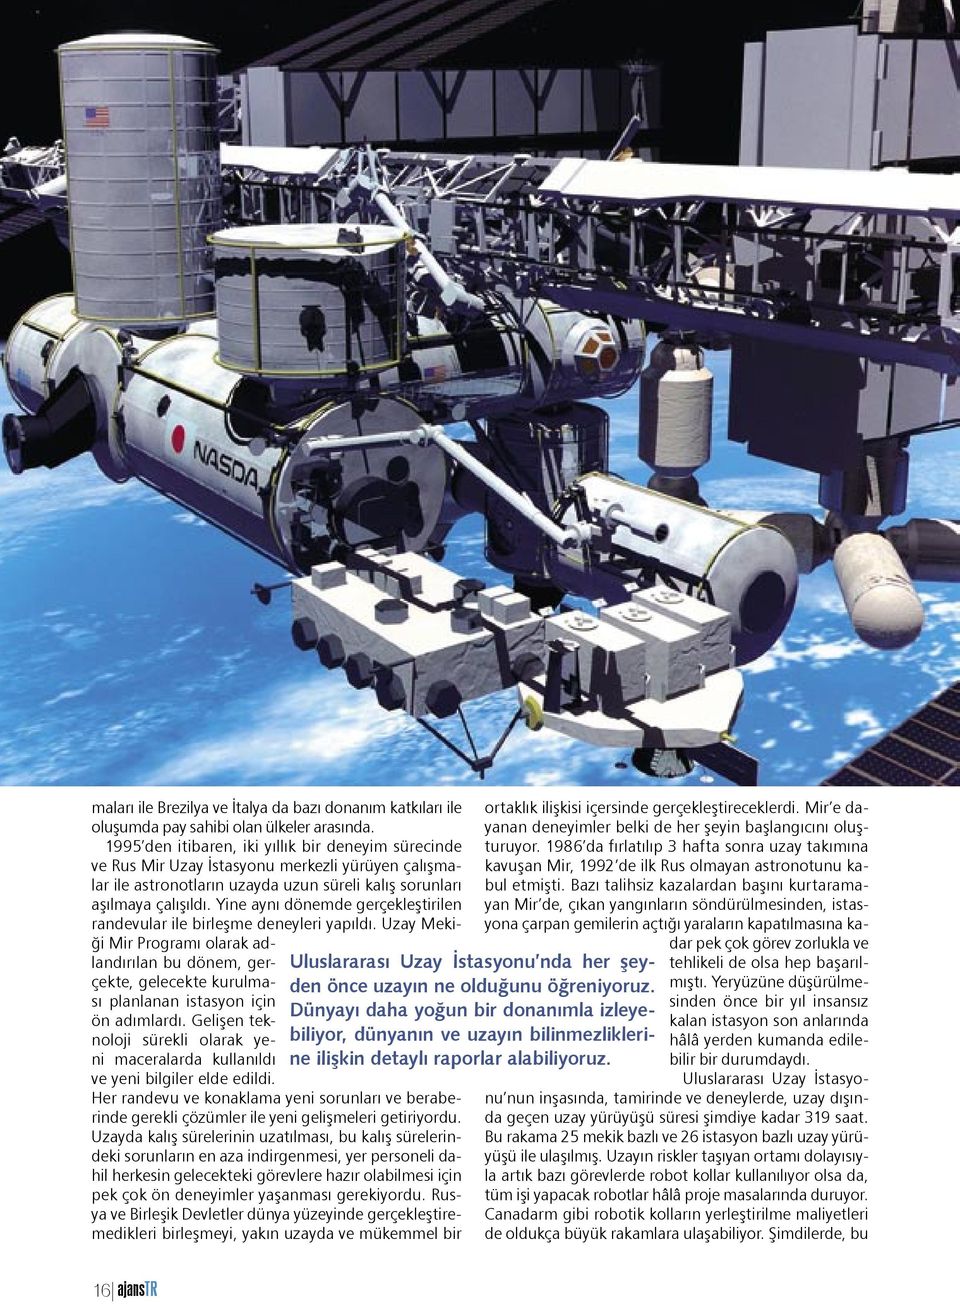 Yine aynı dönemde gerçekleştirilen randevular ile birleşme deneyleri yapıldı. Uzay Mekiği Mir Programı olarak adlandırılan bu dönem, gerçekte, gelecekte kurulması planlanan istasyon için ön adımlardı.